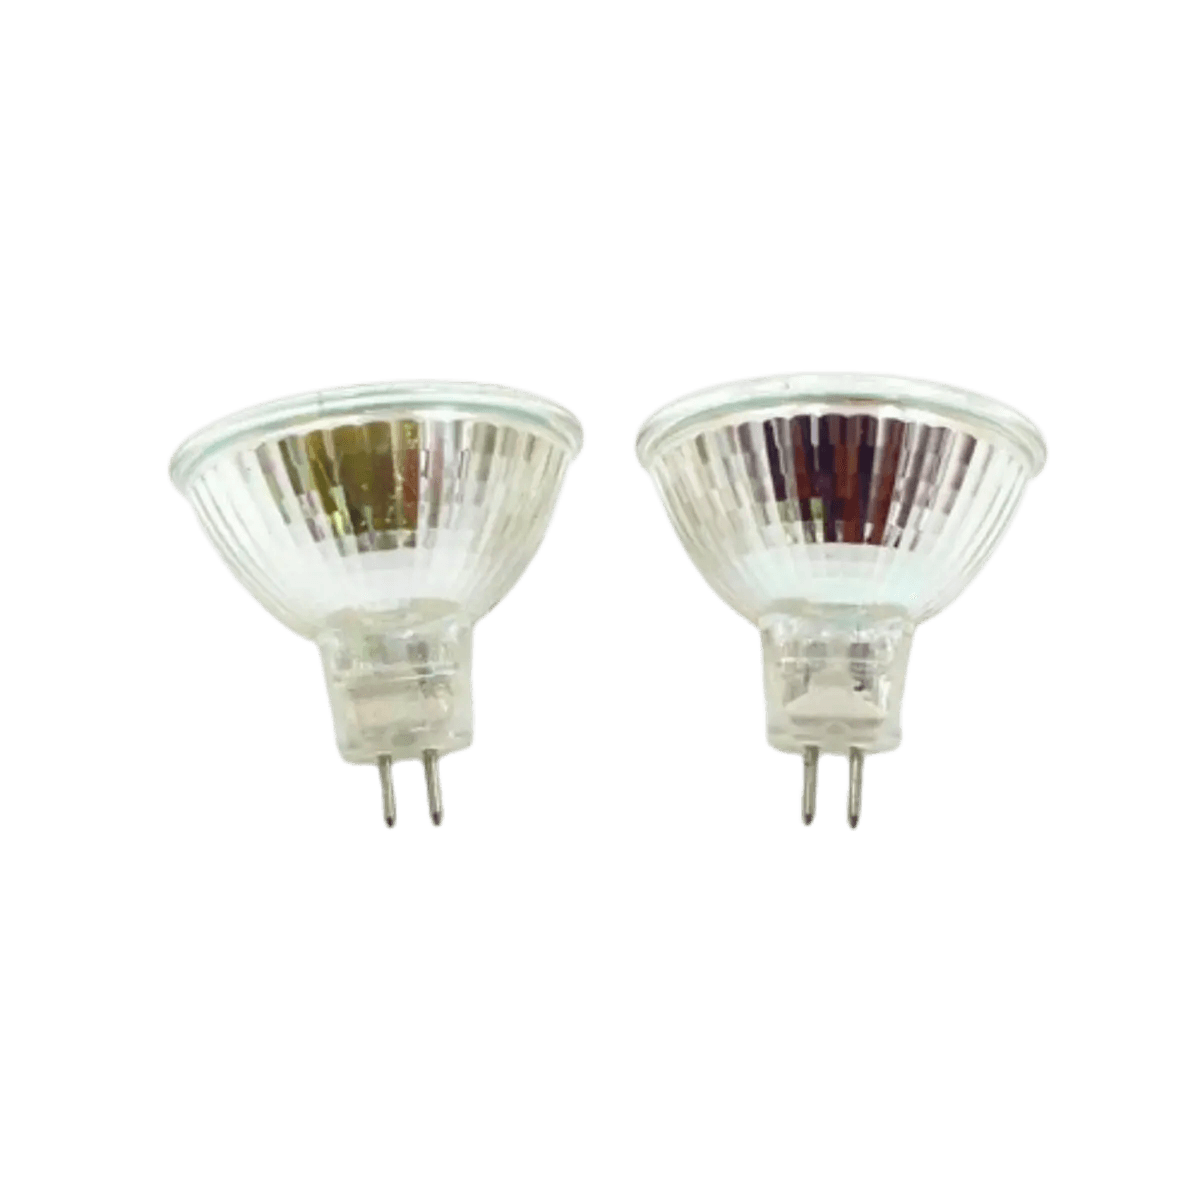 Ampoule spot halogène diamètre 50 mm pour optiques 12v 20w MR16 prix : 3,99  € Motorkit 222100 CG.476179 directement disponible